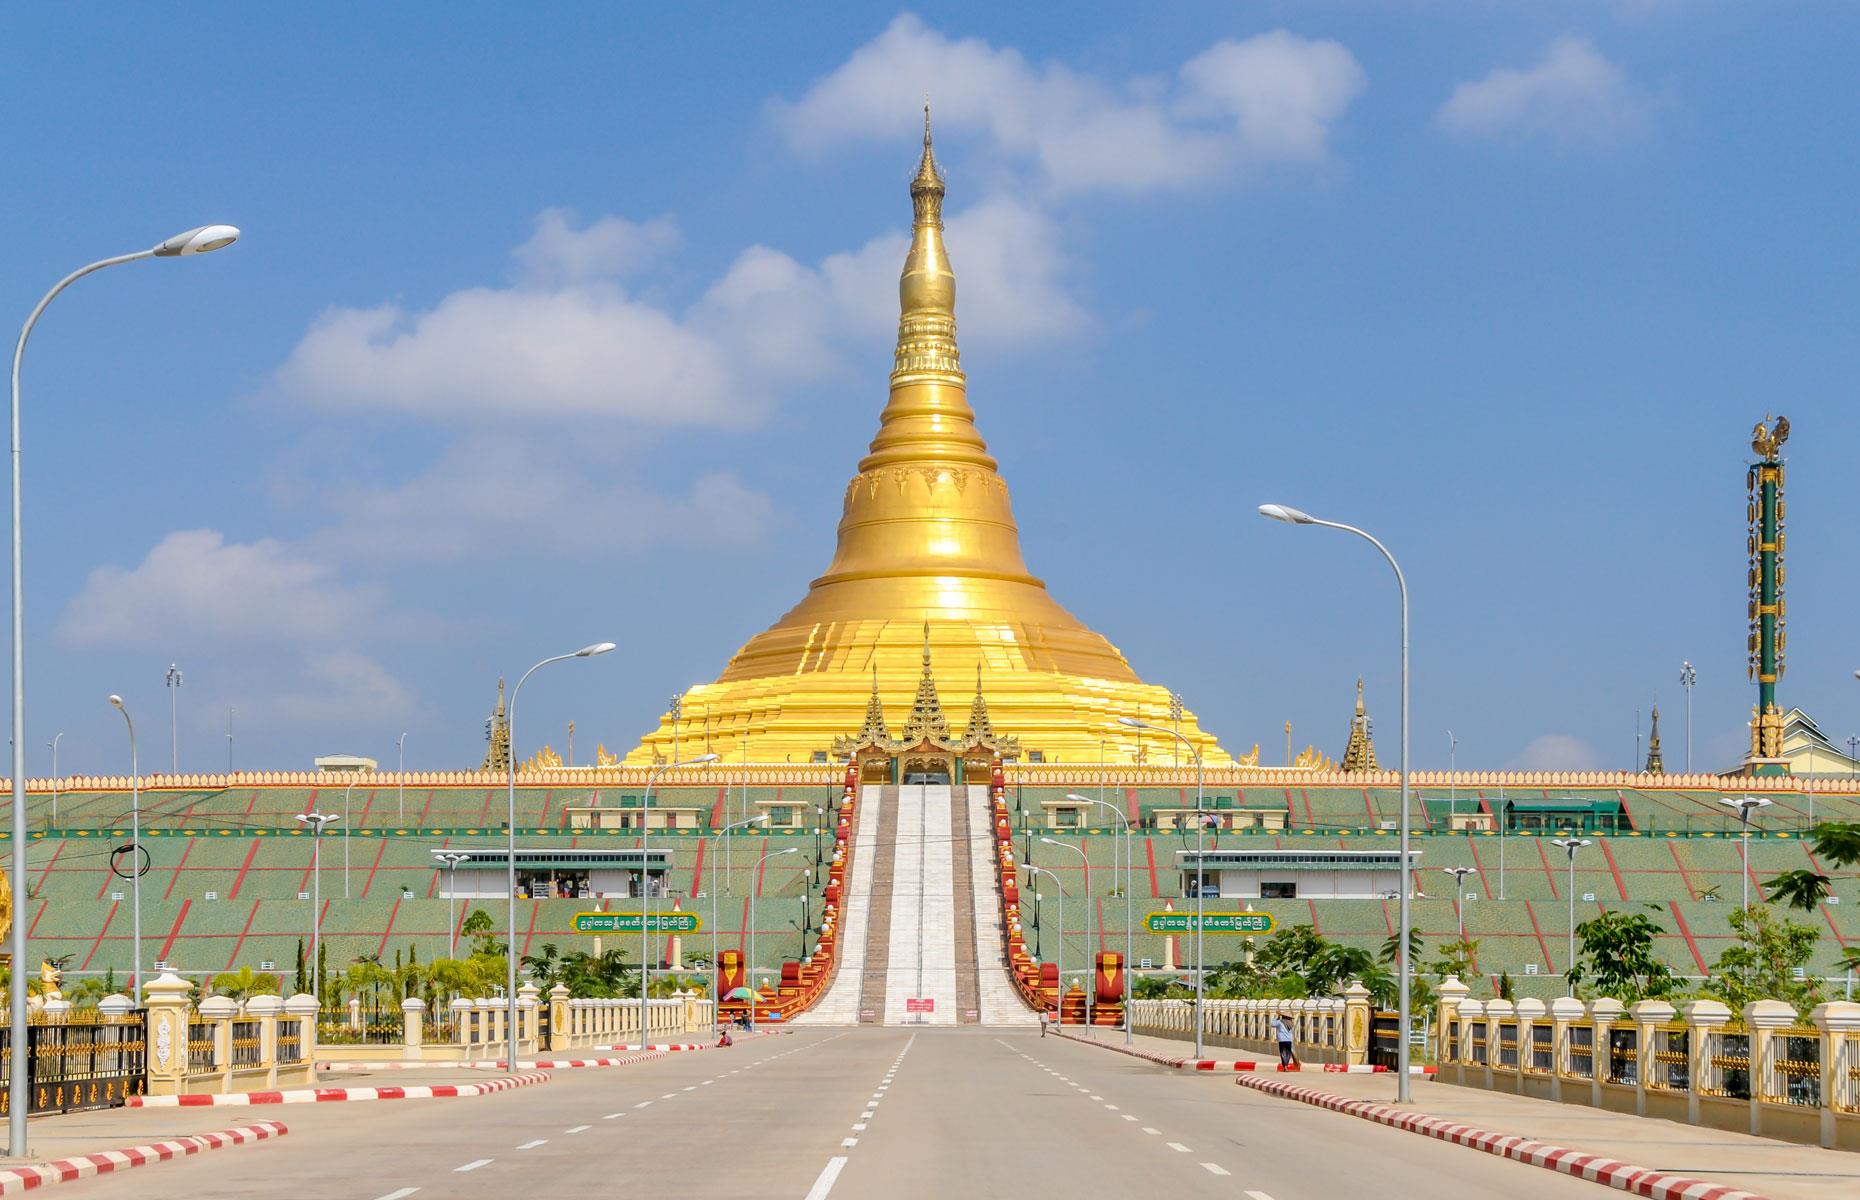 Naypyidaw, Myanmar, cost: $4 billion (£3.3bn)